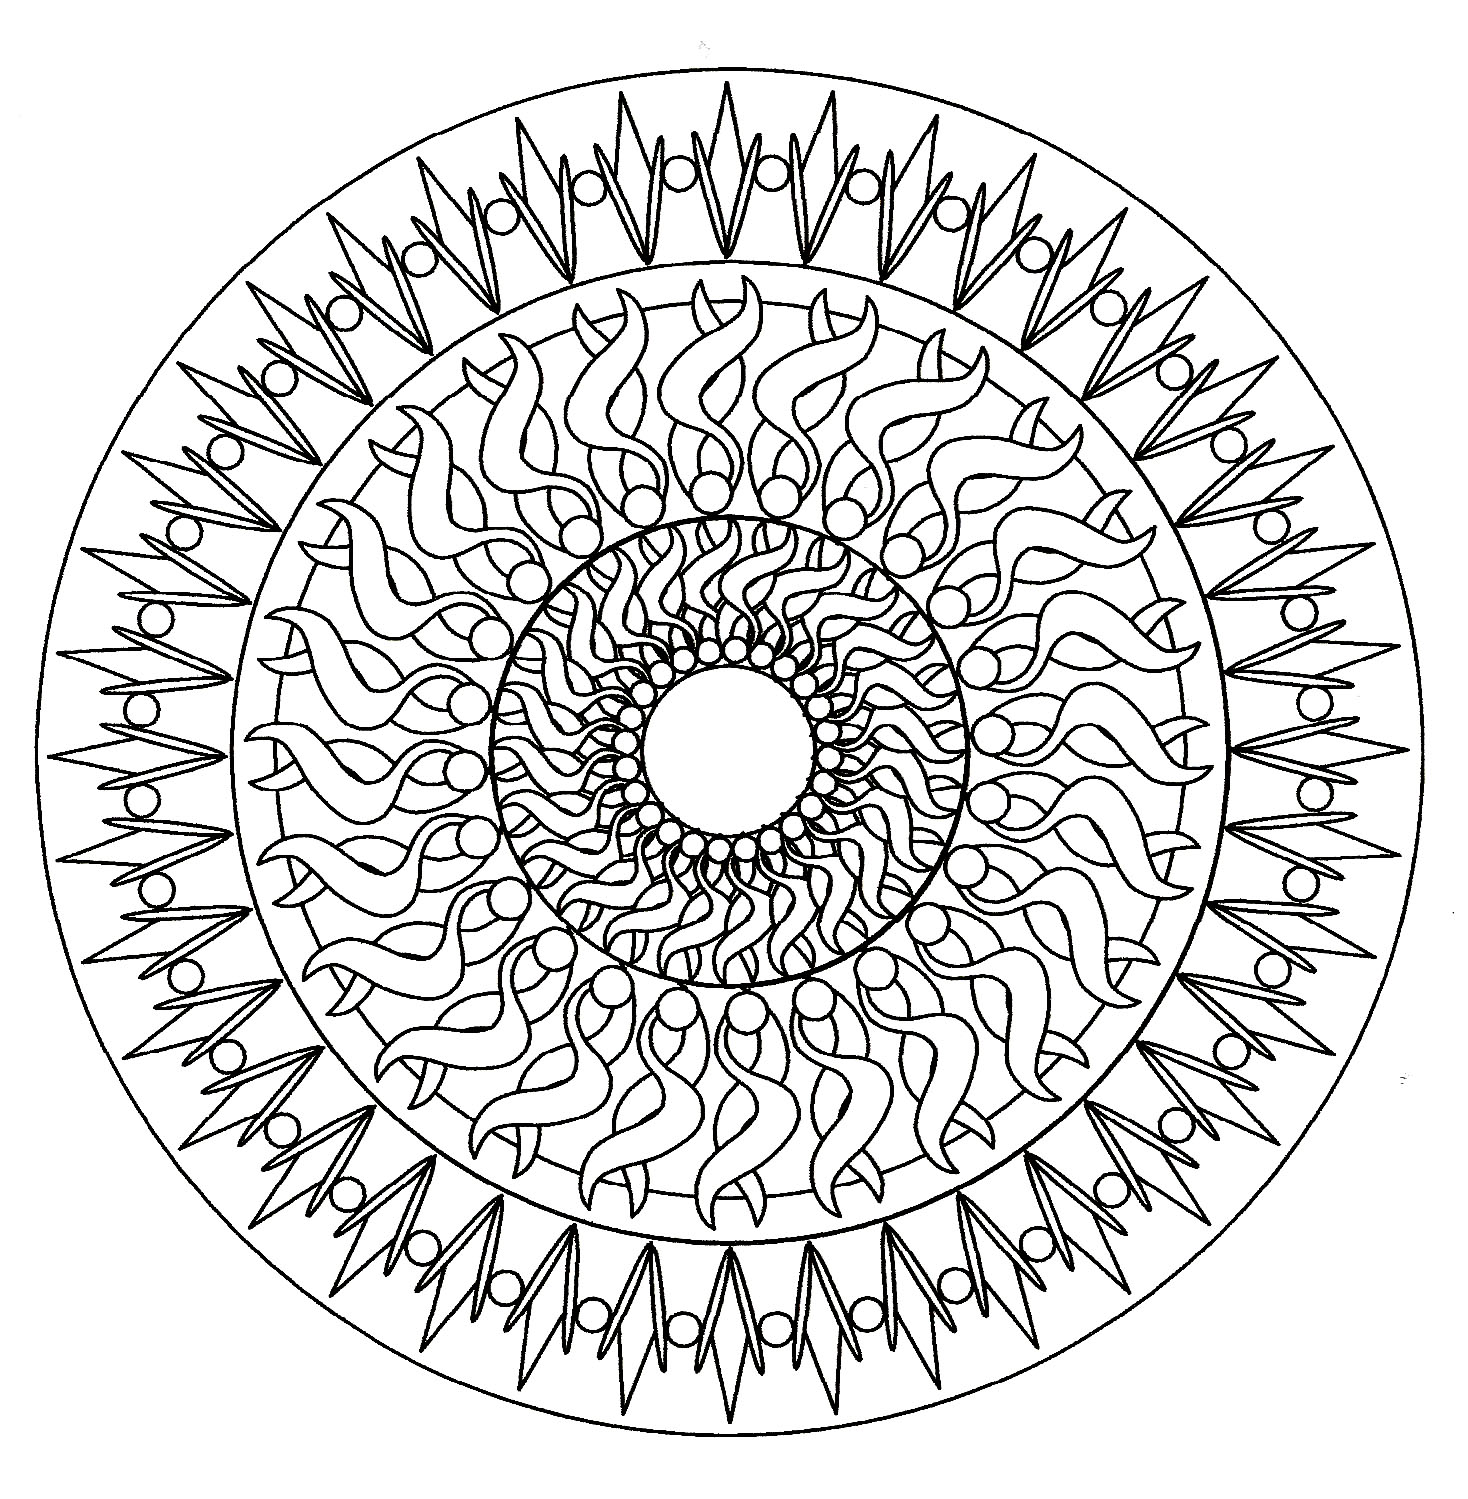 Uma Mandala hipnótica de dificuldade 'normal', adequada para crianças e adultos que pretendem colorir sem serem demasiado simples nem demasiado difíceis.